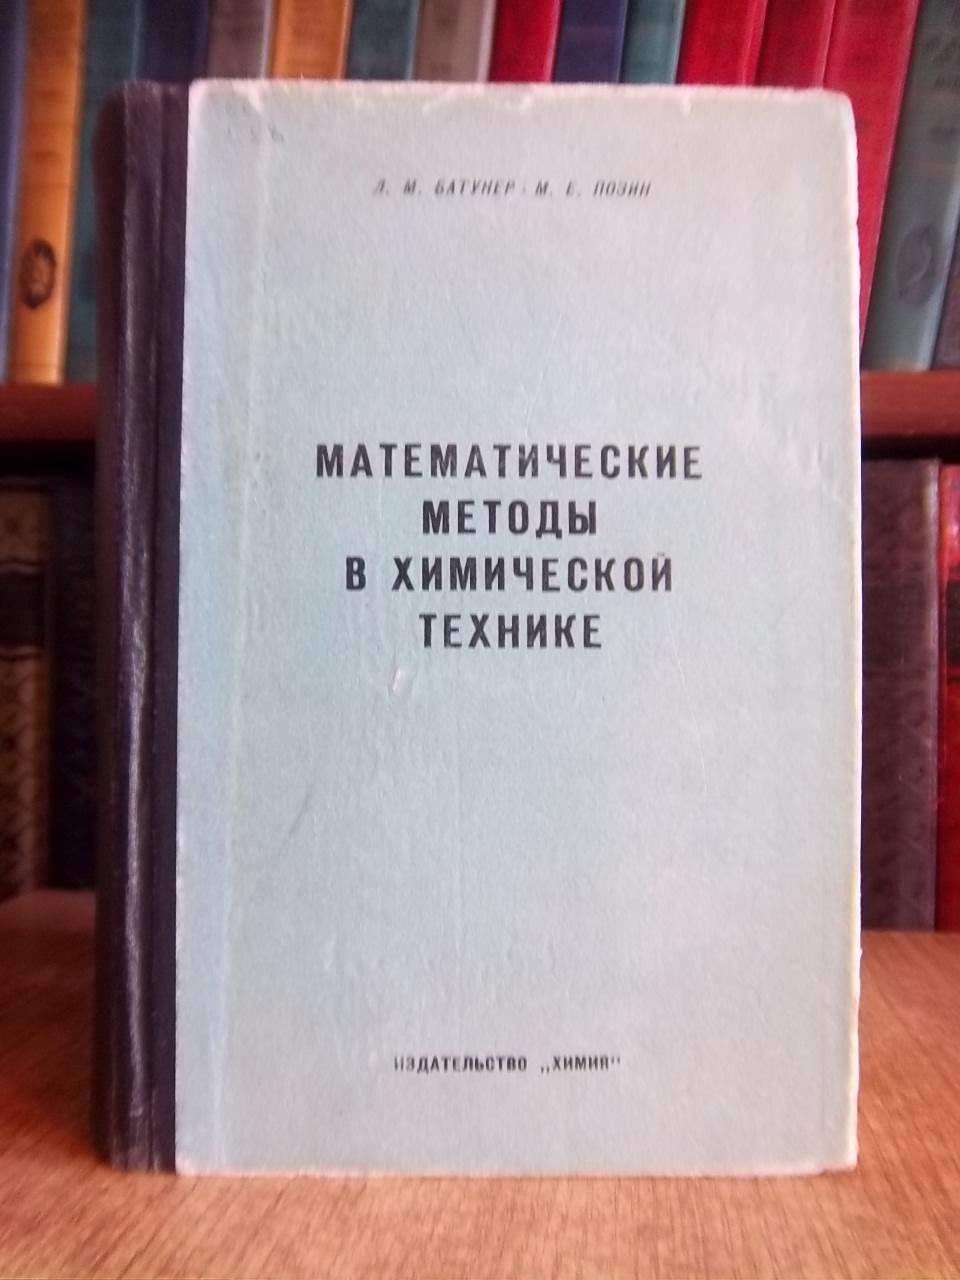 Батунер Л., Позин М.	Математические методы в химической технике.